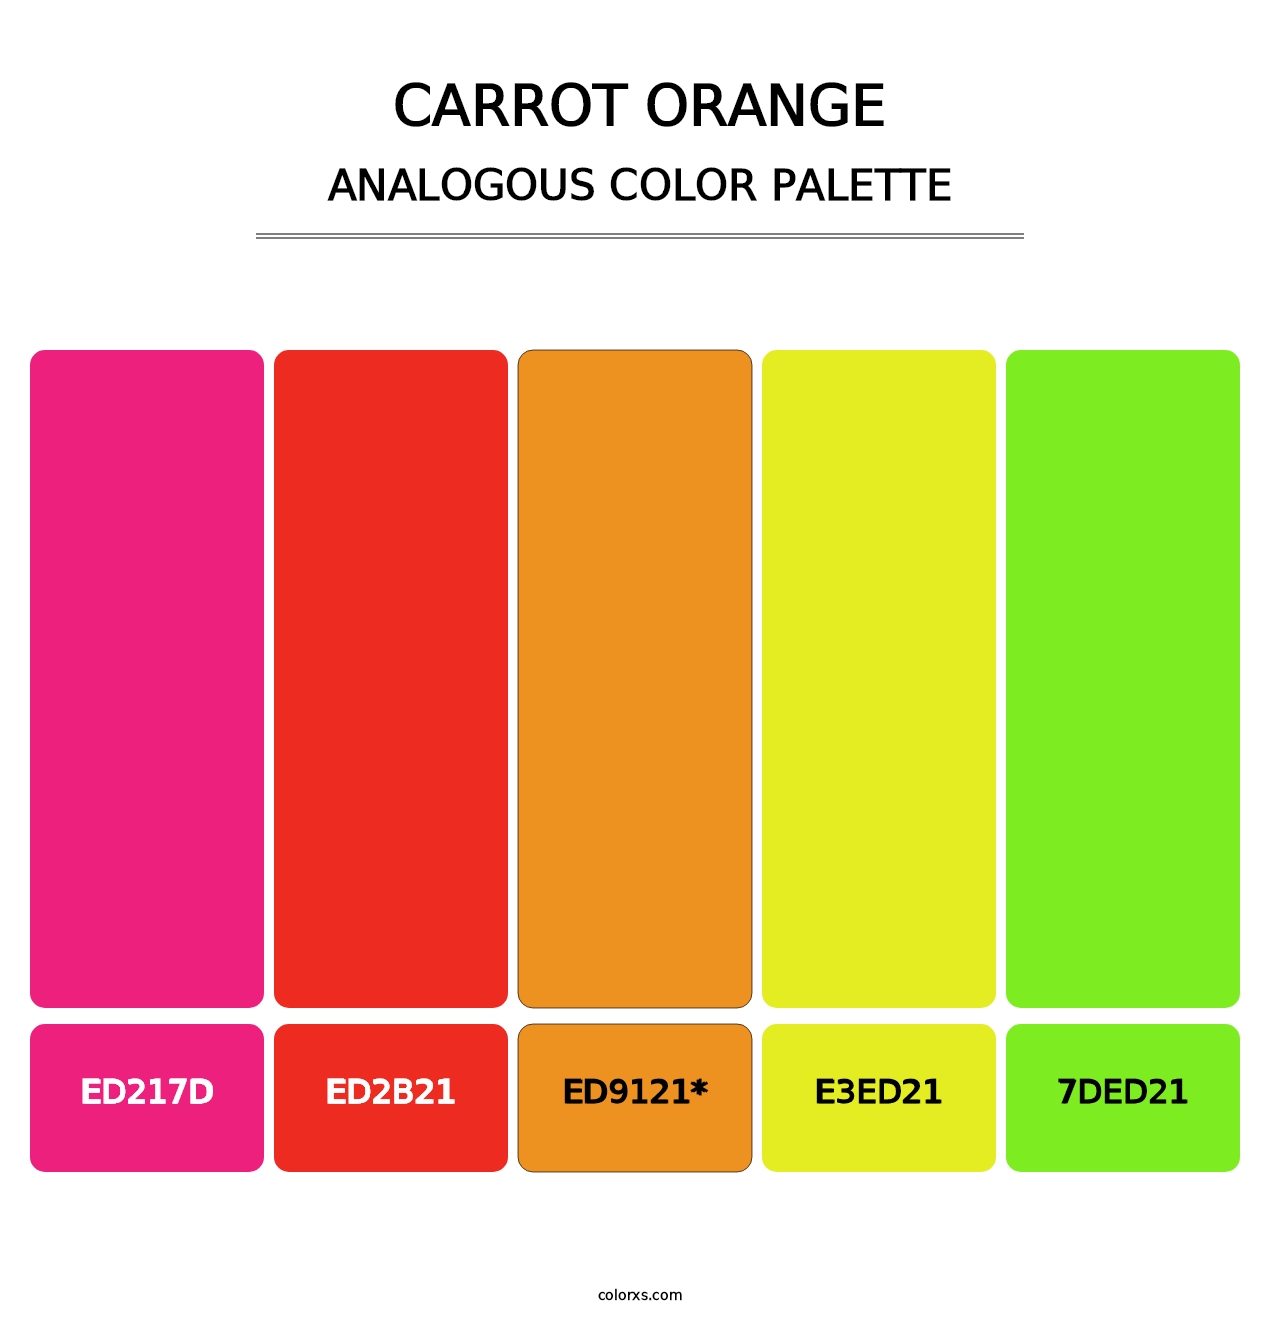 Carrot Orange - Analogous Color Palette